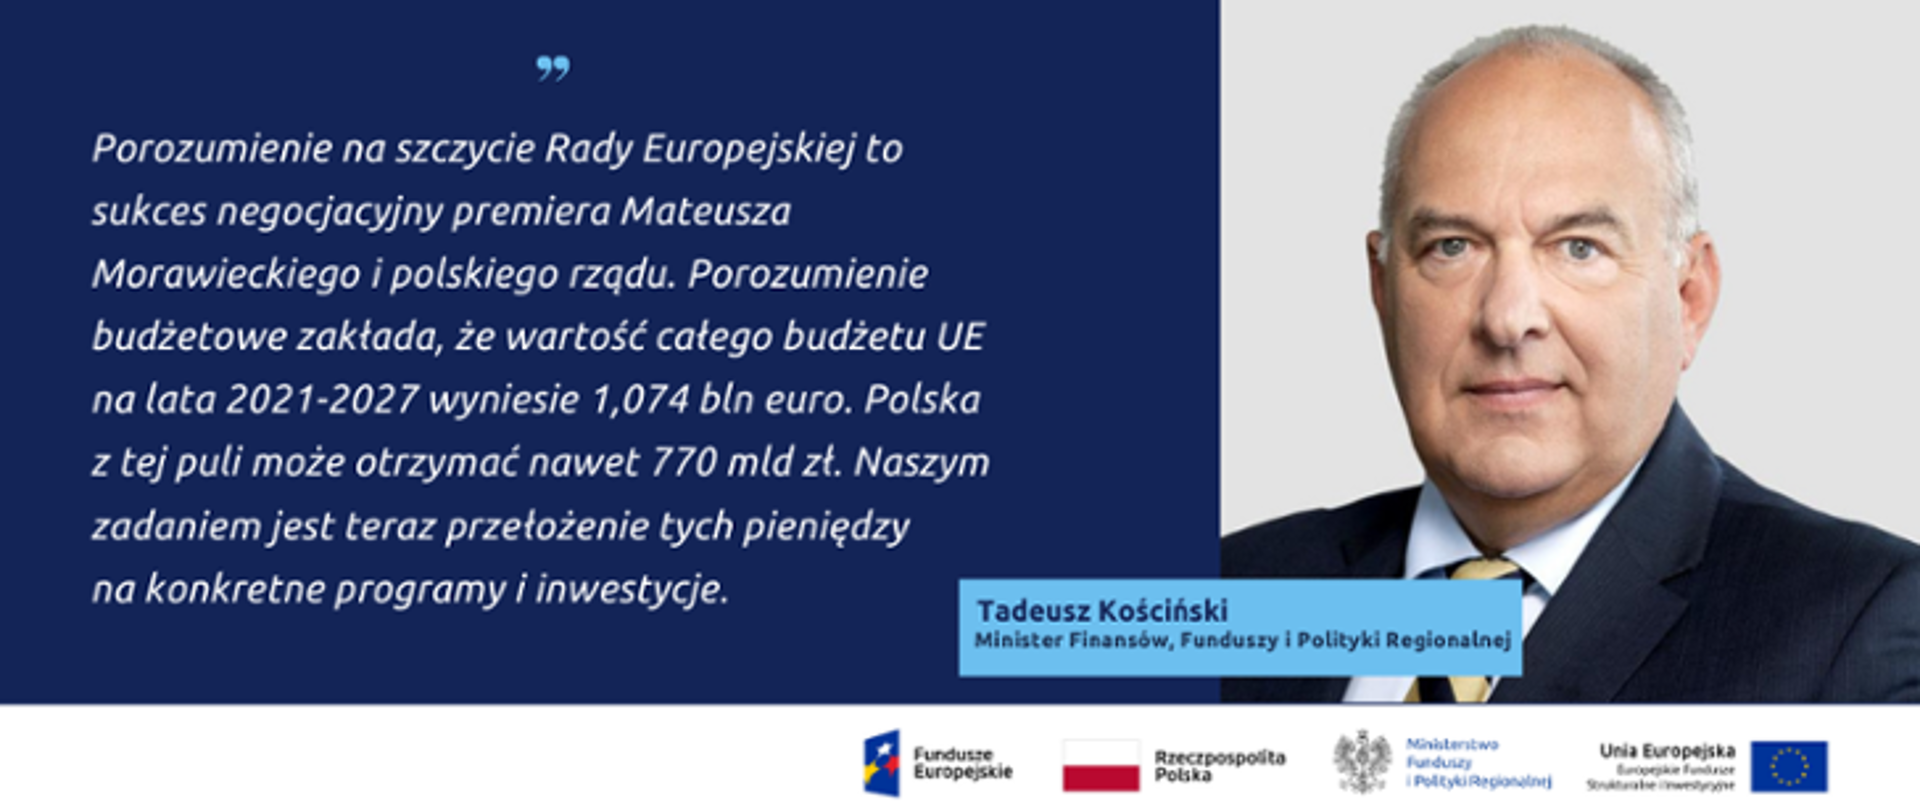 Zdjęcie portretowe ministra Tadeusza Kościńskiego, obok cytat: Porozumienie na szczycie Rady Europejskiej to sukces negocjacyjny premiera Mateusza Morawickiego i polskiego rządy. Porozumienie budżetowe zakłada, że wartość całego budżetu UE na lata 2021-2027 wyniesie 1,074 bln euro. Polska z tej puli może otrzymać nawet 770 mld zł. Naszym zadaniem jest teraz przełożenie tych pieniędzy na konkretne programy i inwestycje.